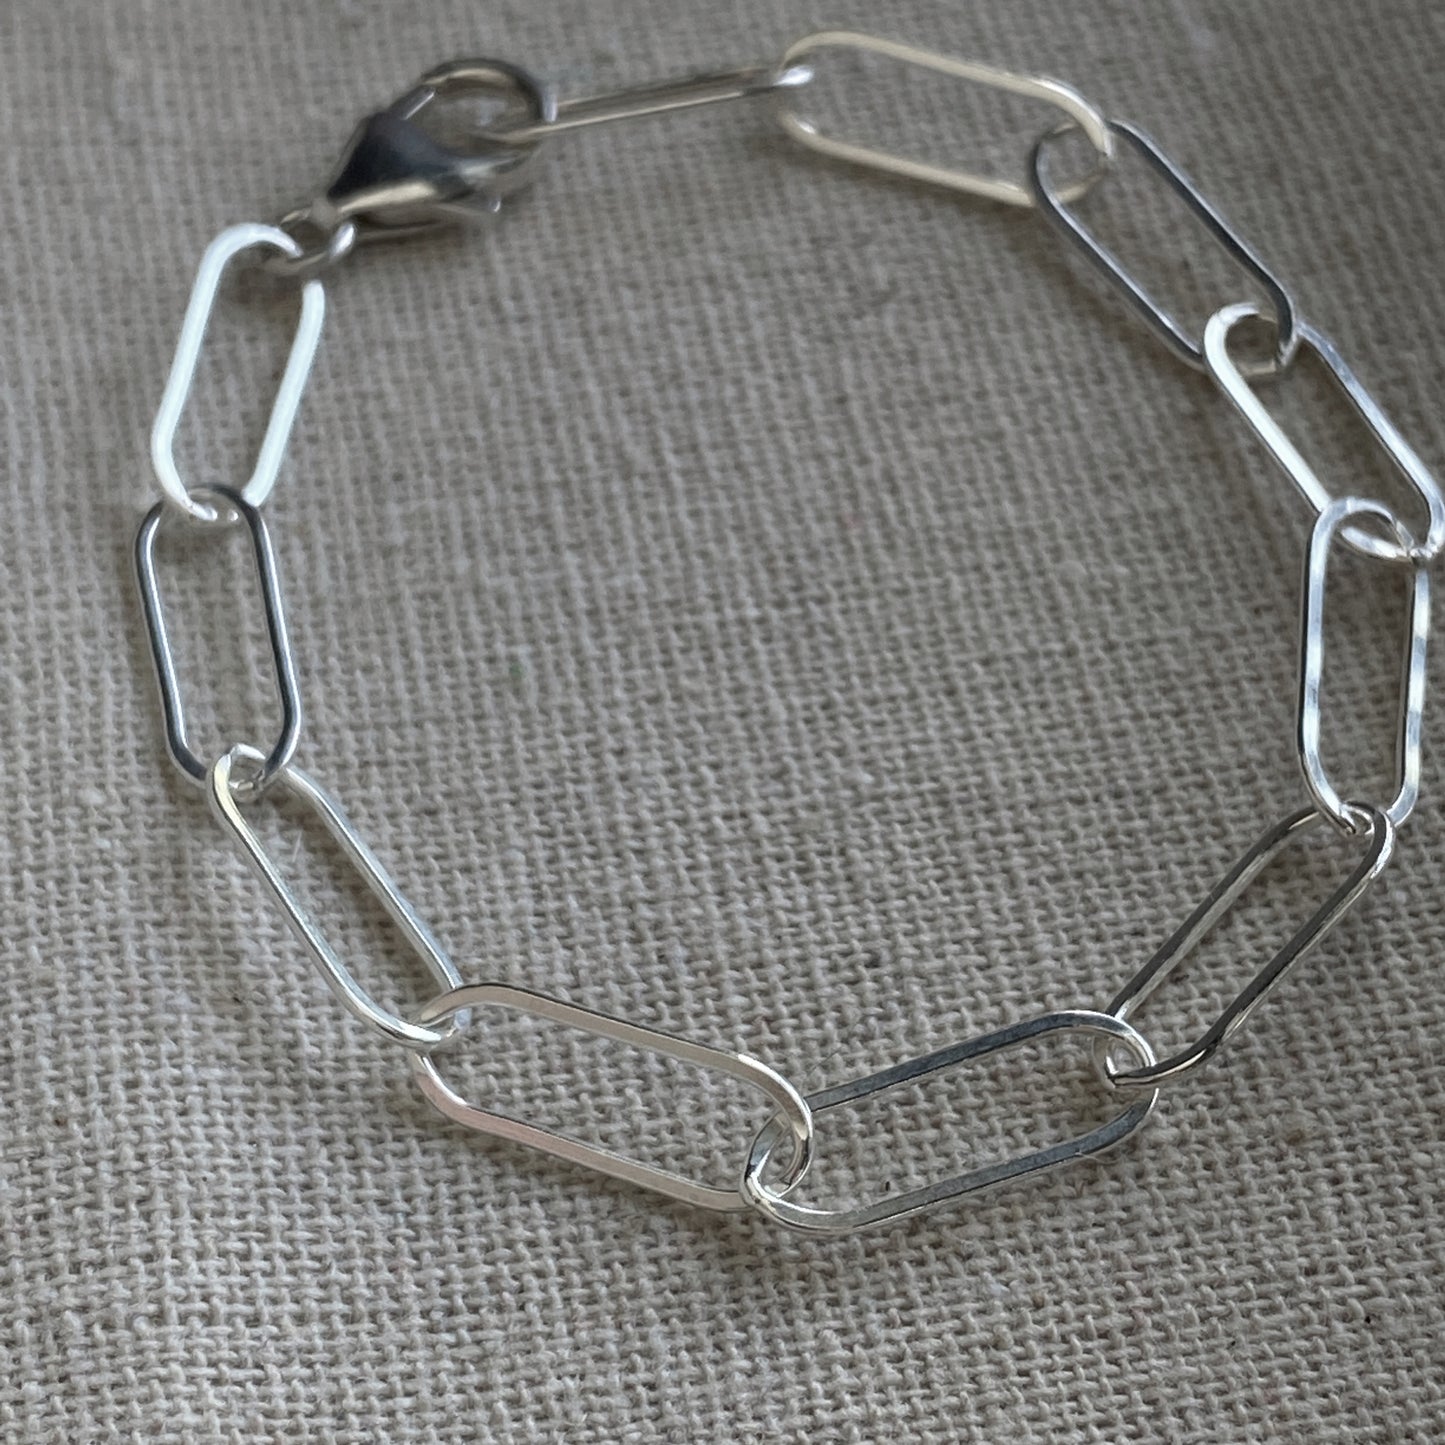 Permanent Jewelry 14K Goldfill Chain Bracelet - Heart Link